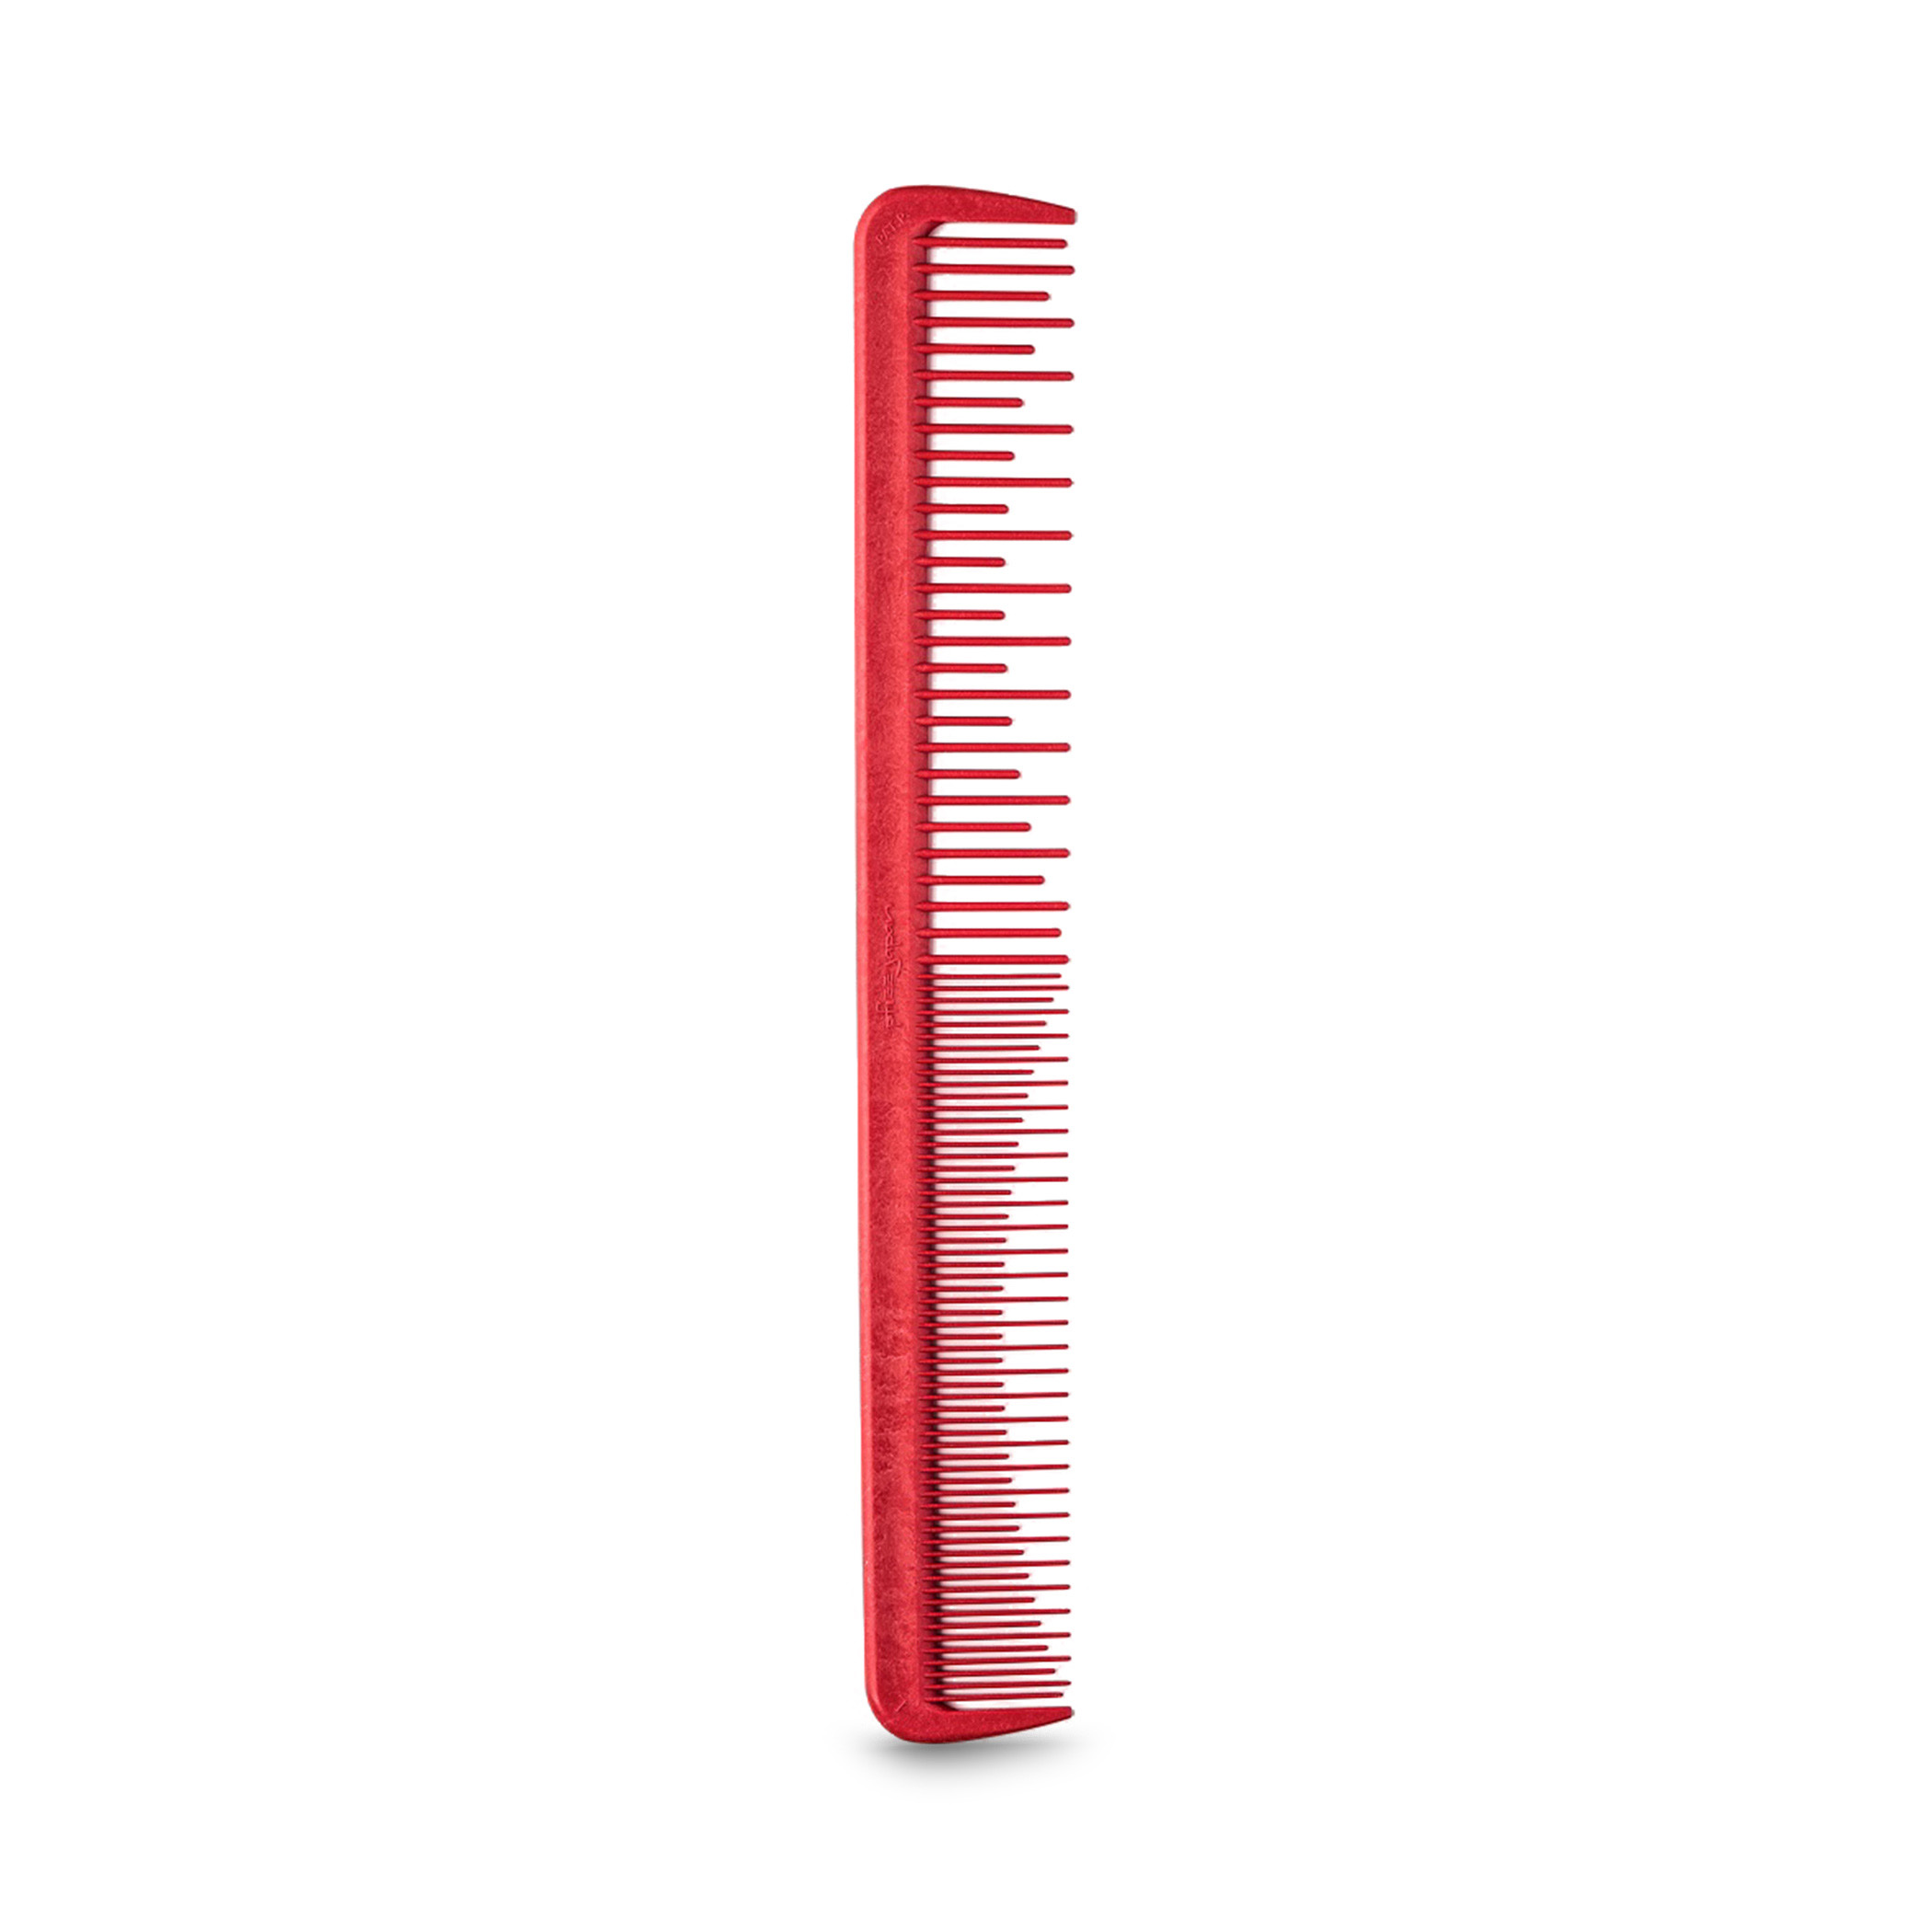 Pfizz расческа. Расческа Pfizz Comb Red long. Расческа с длинной толстой ручкой отзывы.